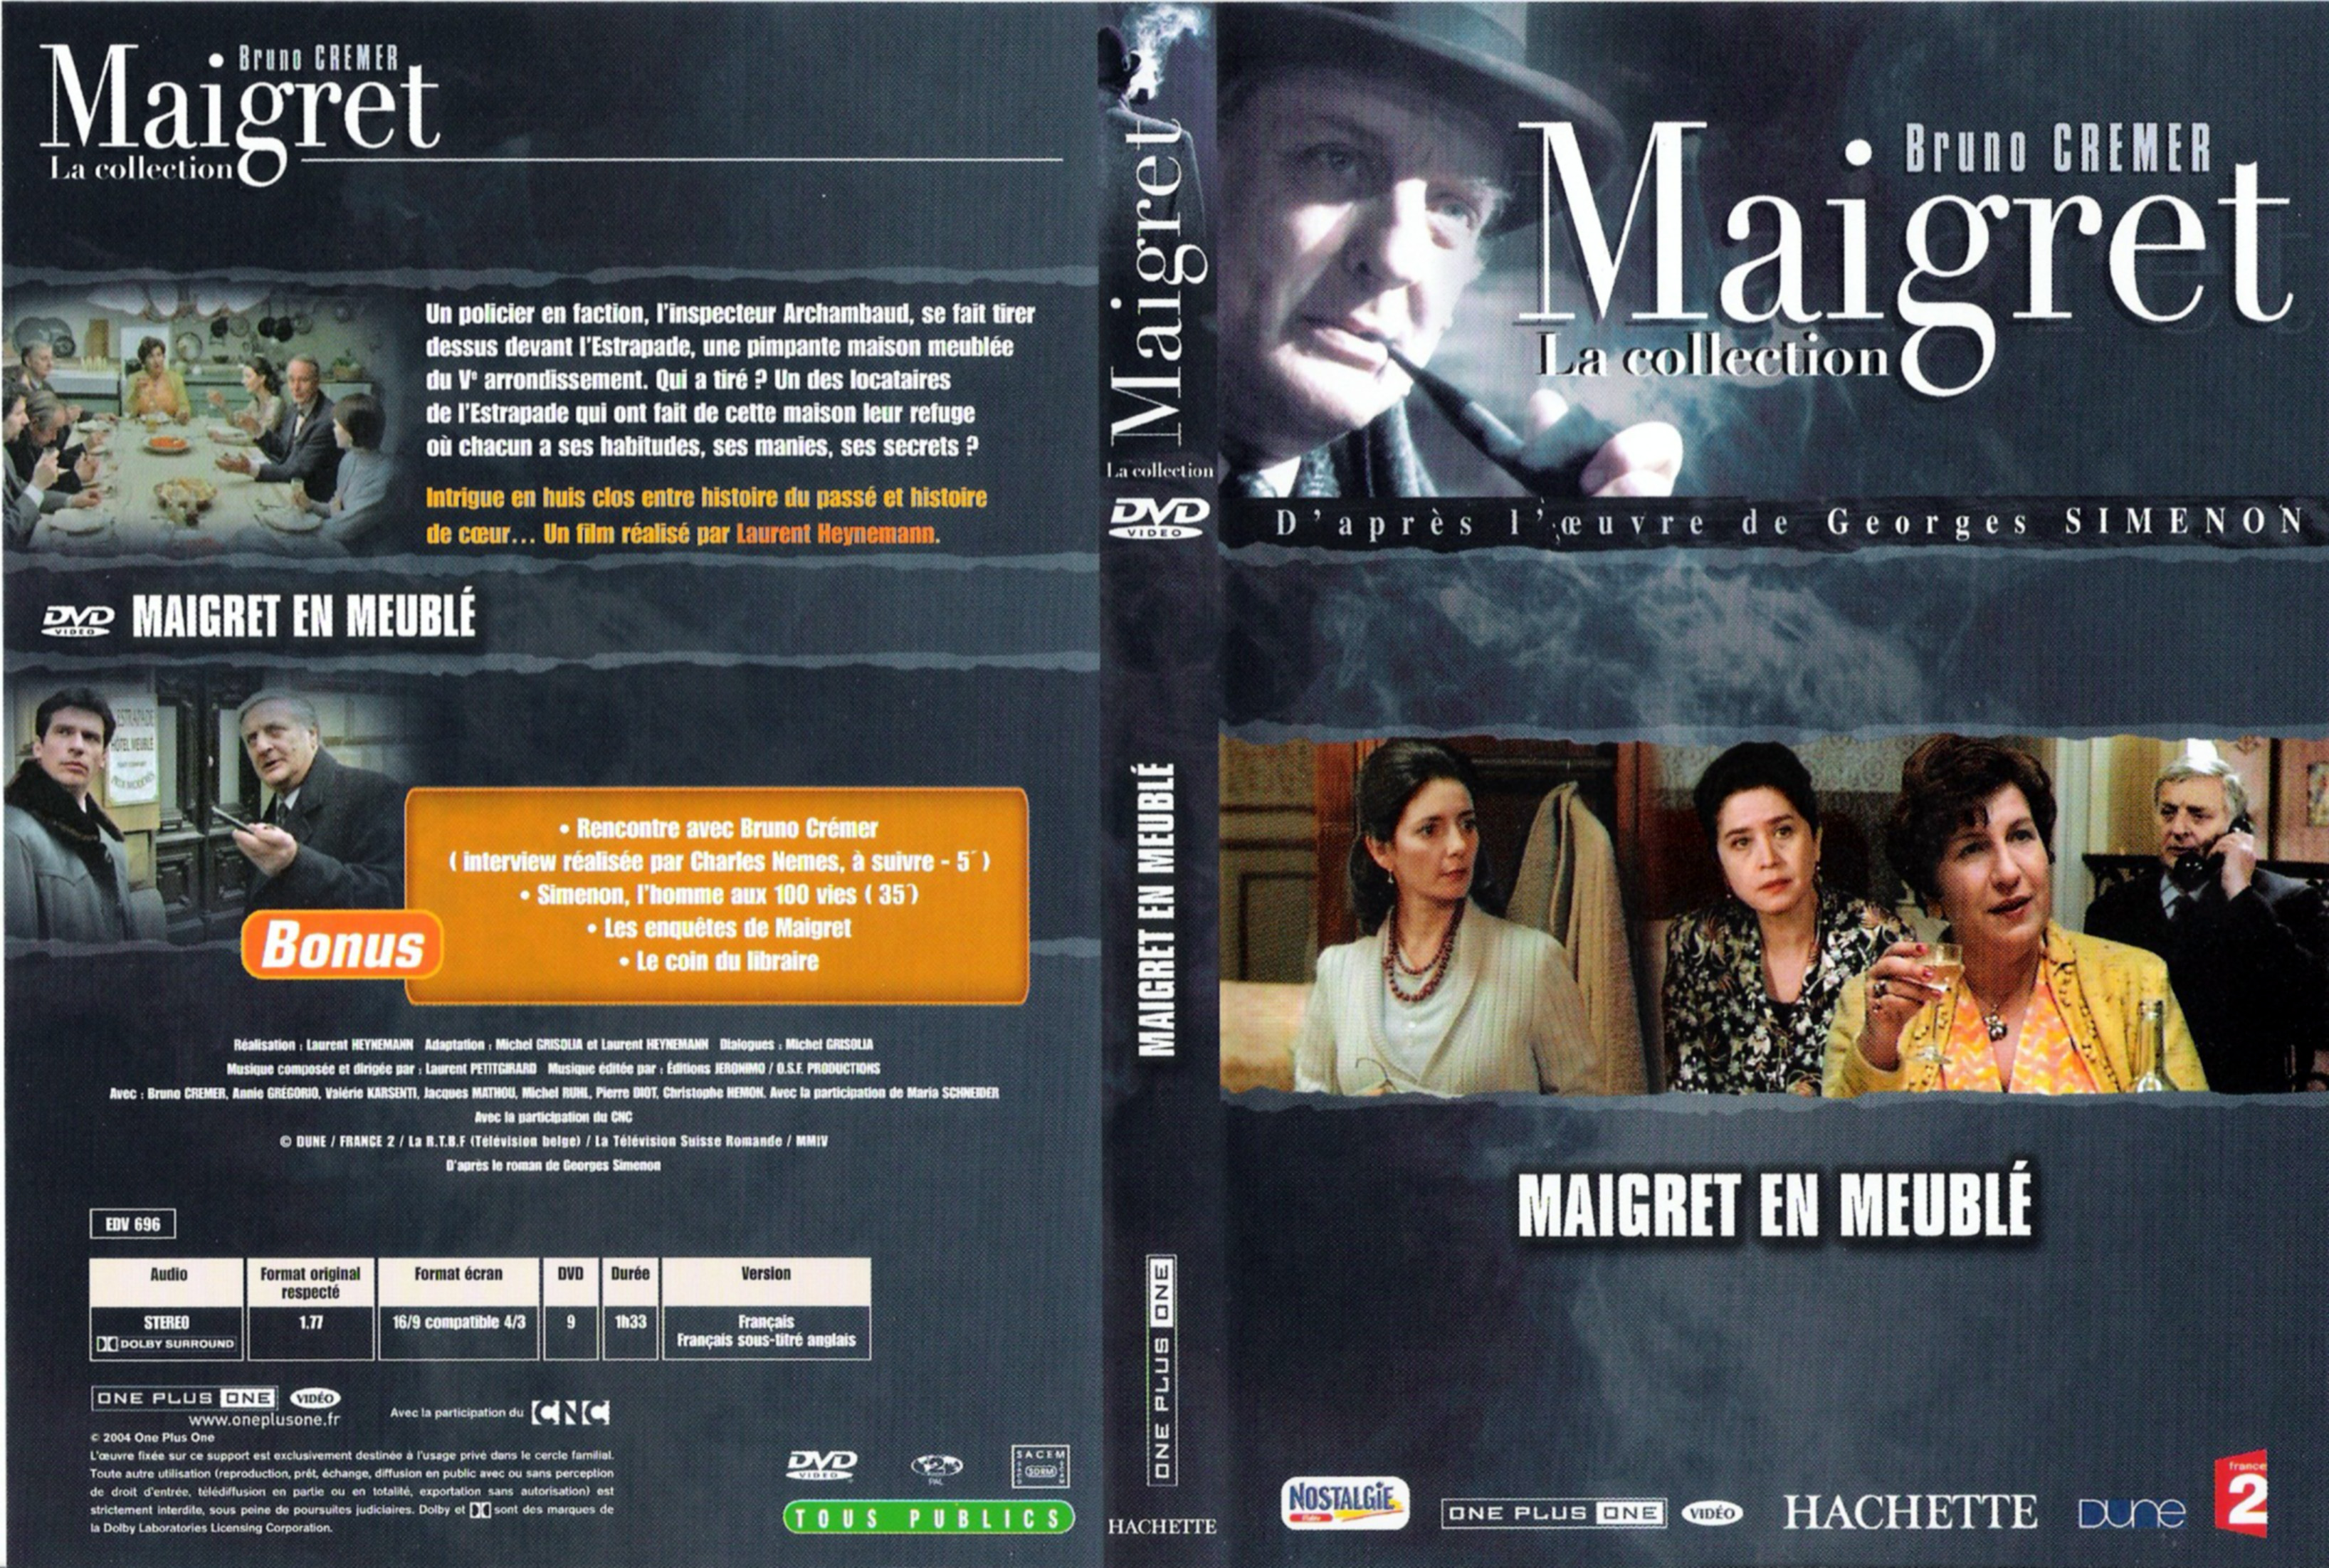 Jaquette DVD Maigret en meubl (Bruno Cremer)